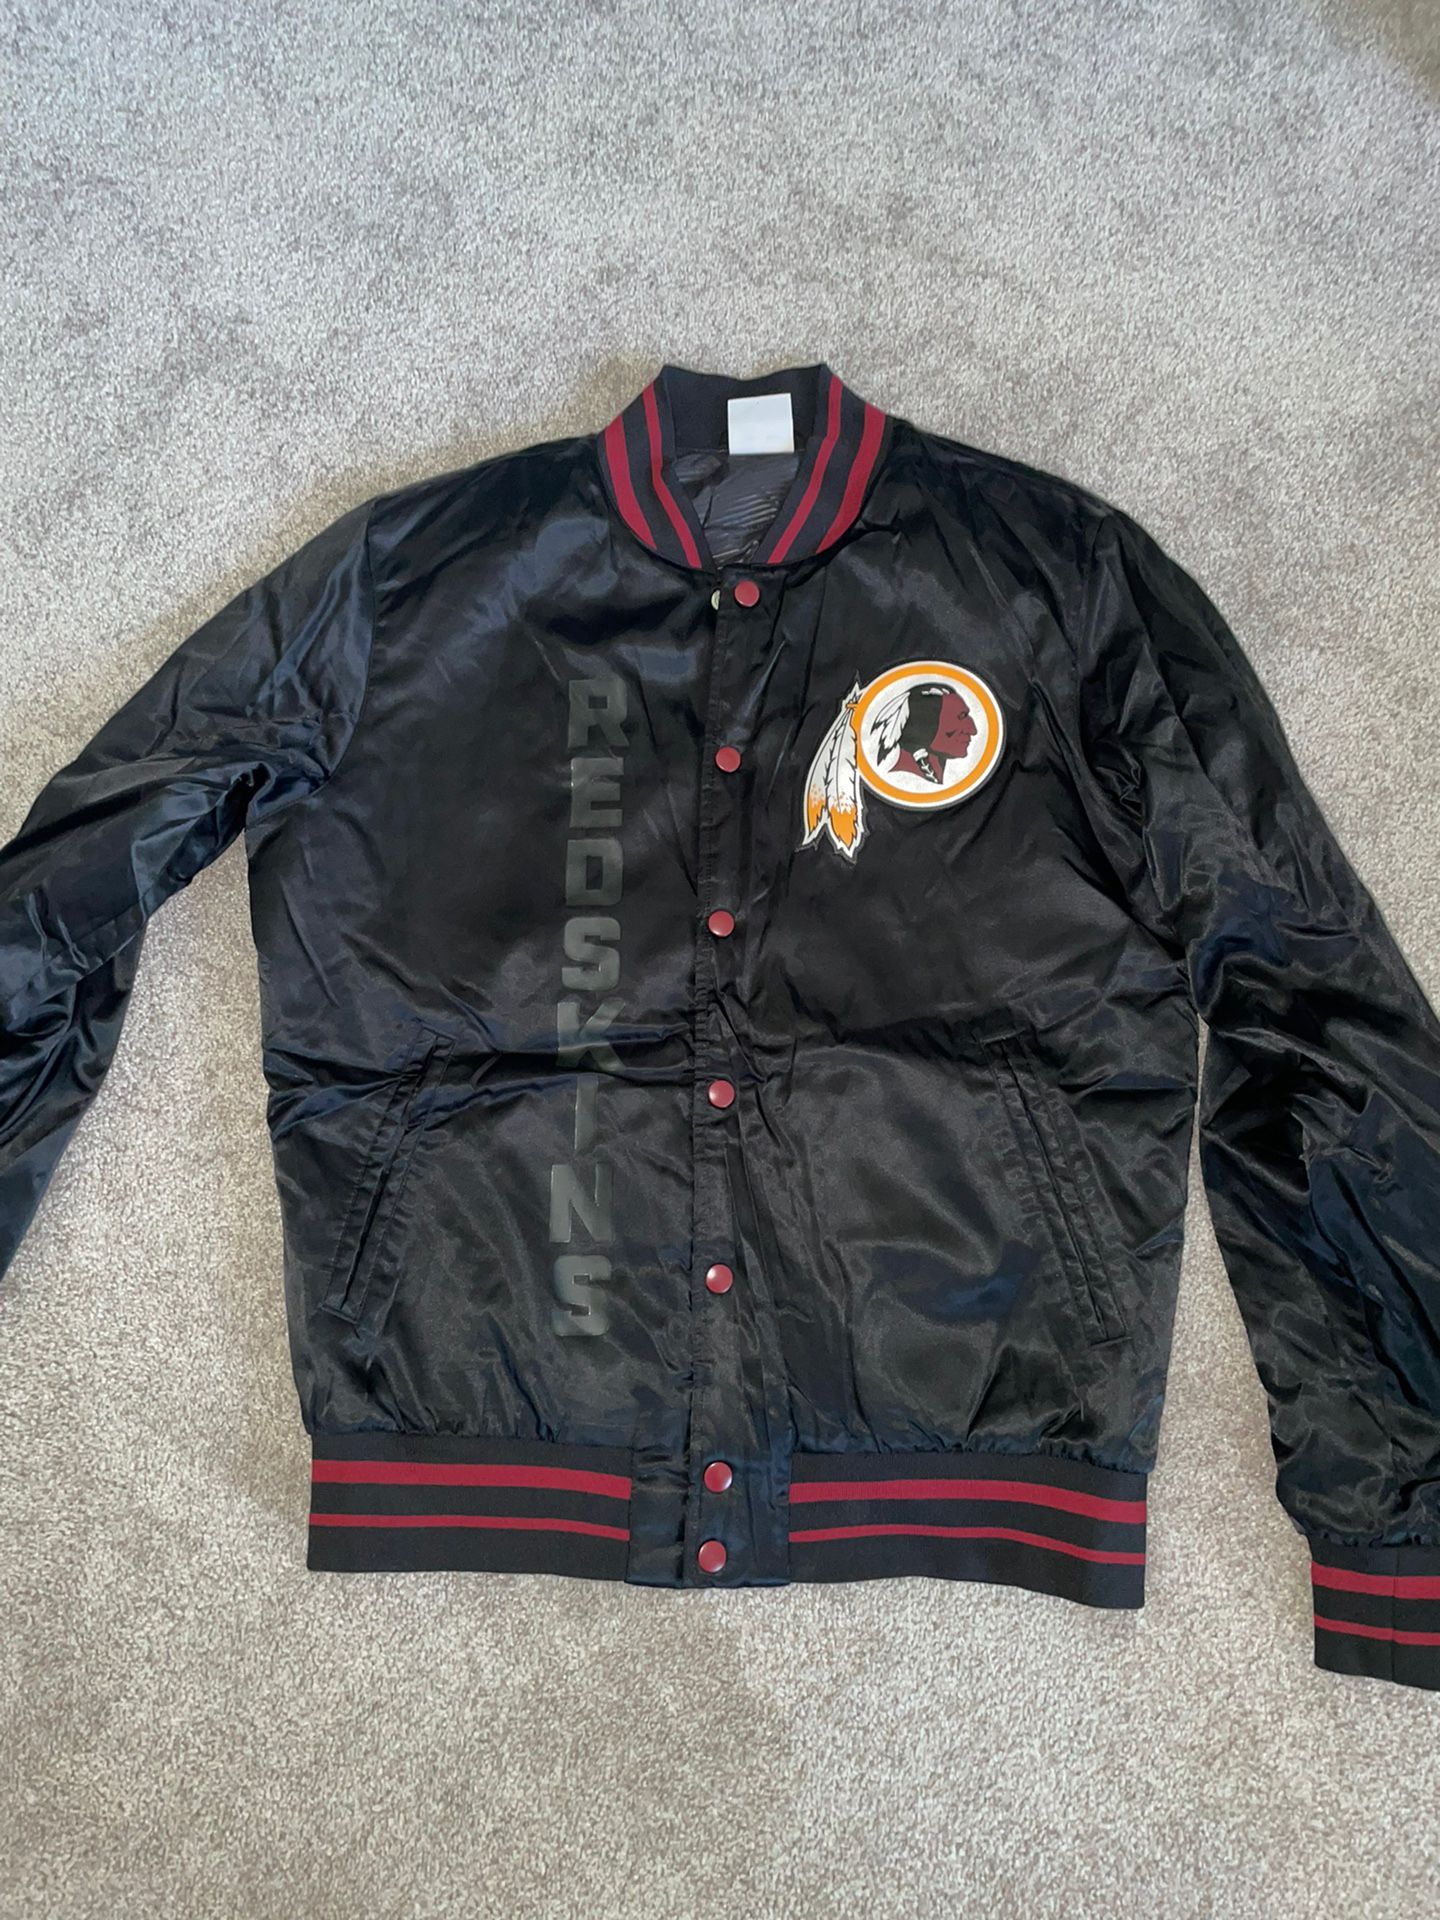 Redskins Bomber Jacket